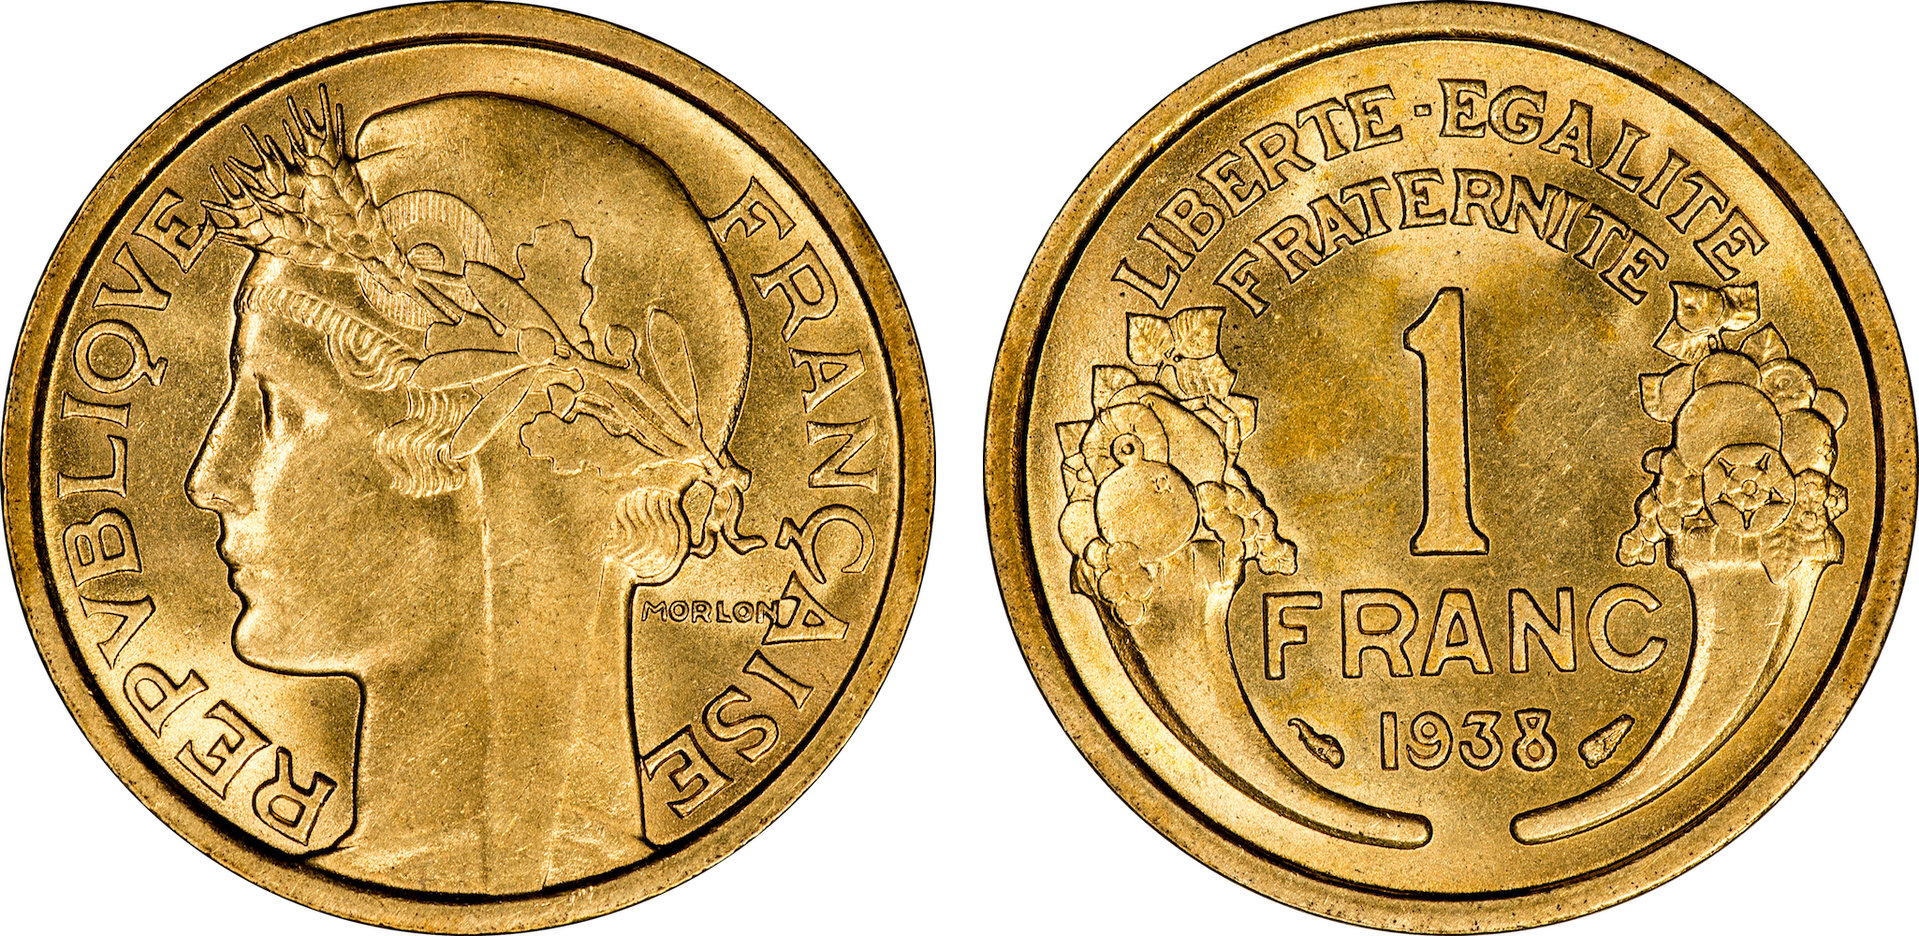 France - 1938 1 Franc.jpg